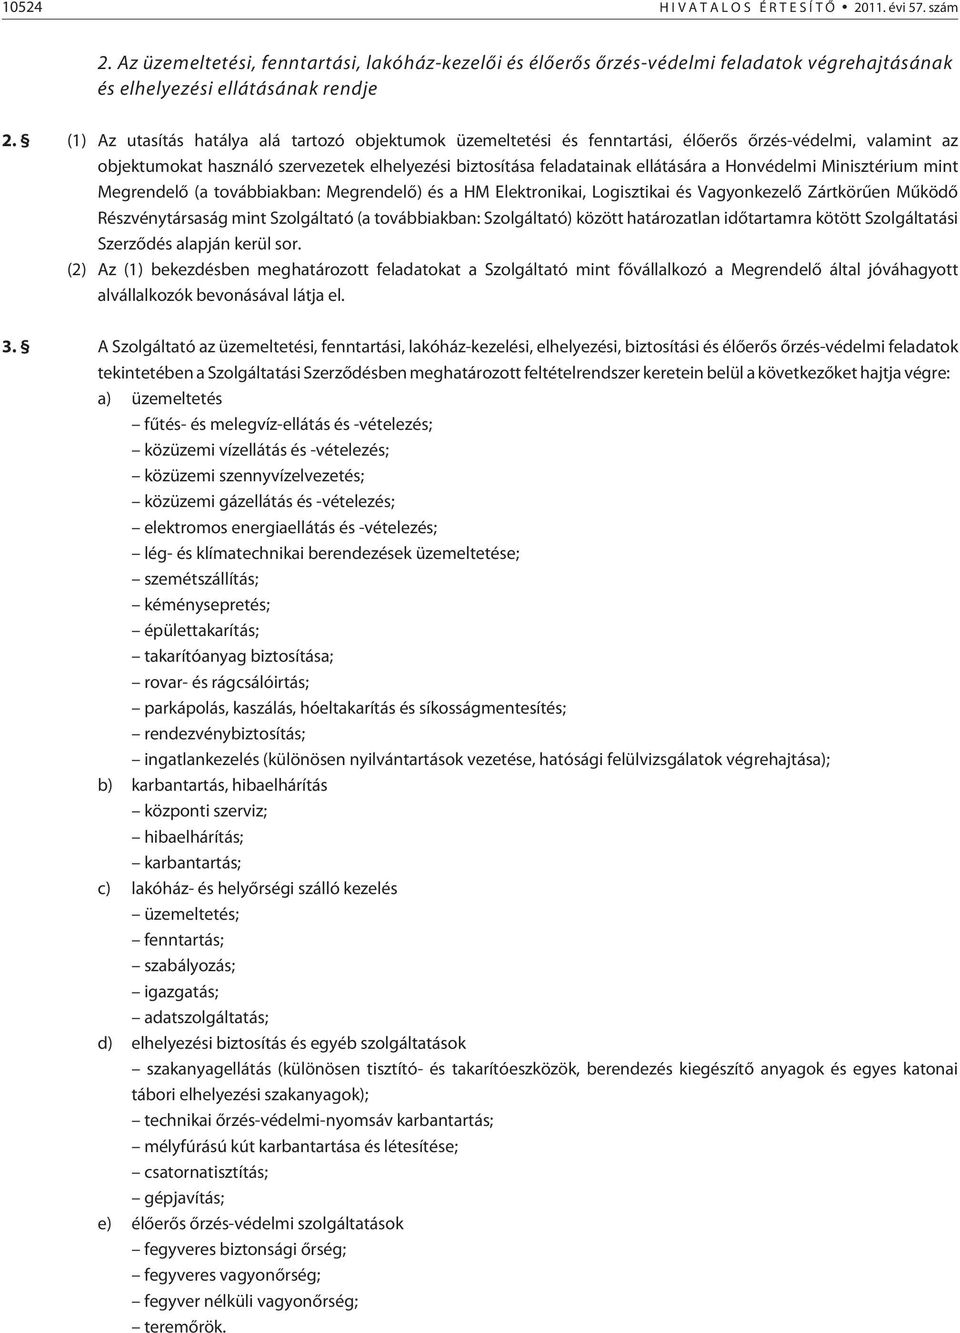 Honvédelmi Minisztérium mint Megrendelõ (a továbbiakban: Megrendelõ) és a HM Elektronikai, Logisztikai és Vagyonkezelõ Zártkörûen Mûködõ Részvénytársaság mint Szolgáltató (a továbbiakban: